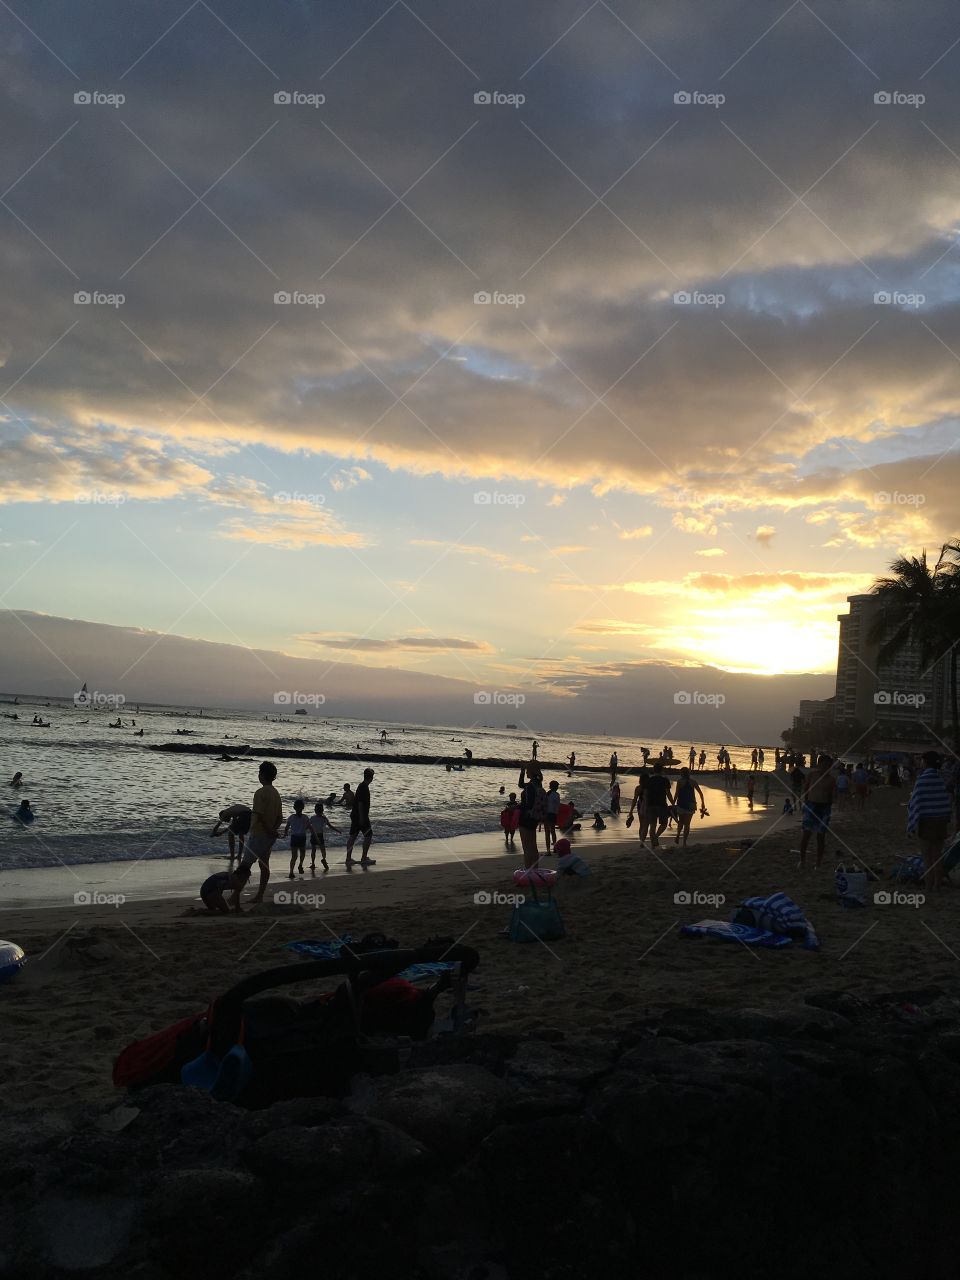 Another Waikiki sunset